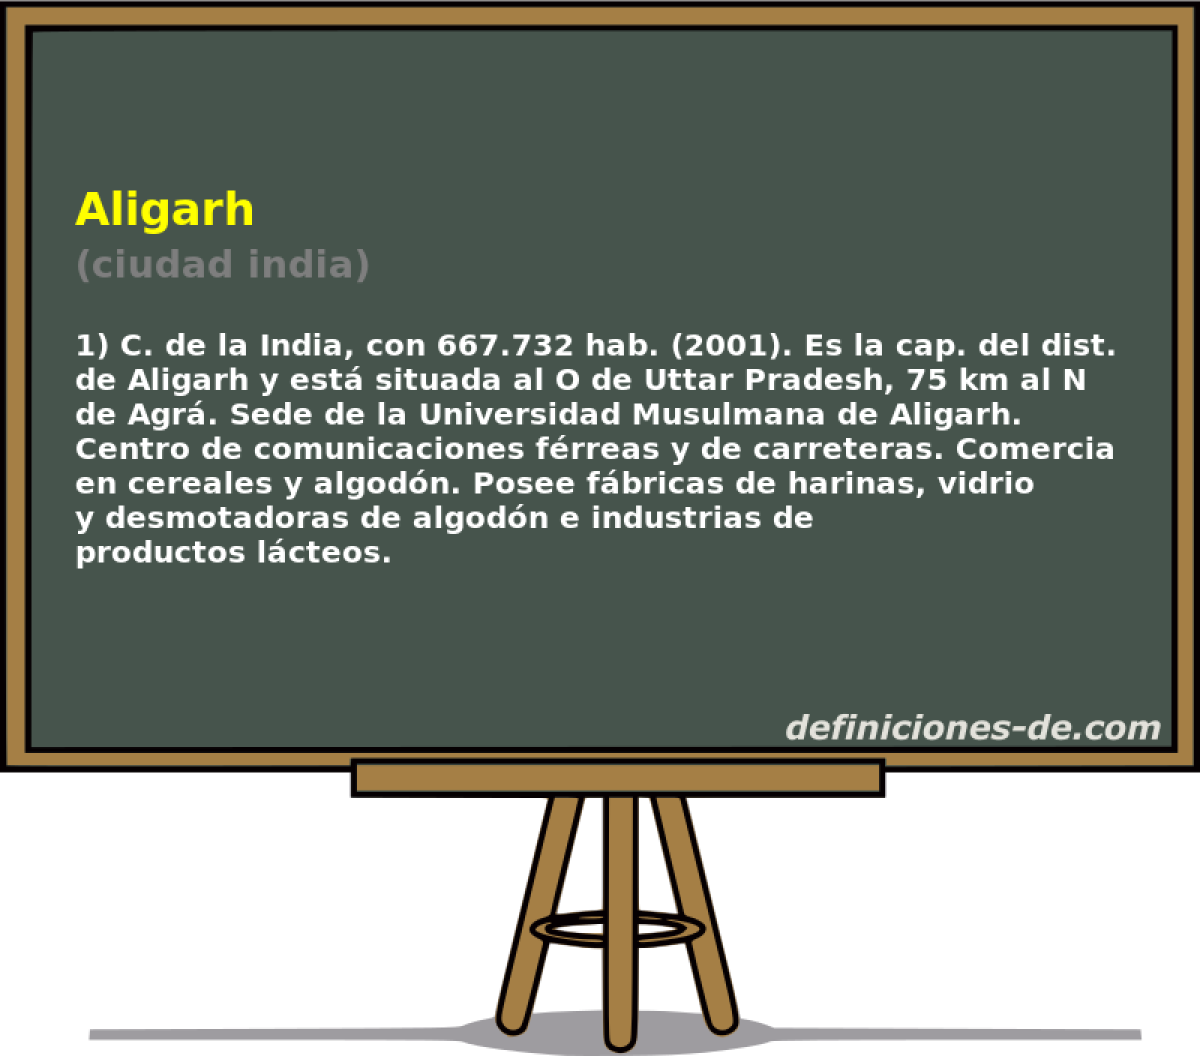 Aligarh (ciudad india)